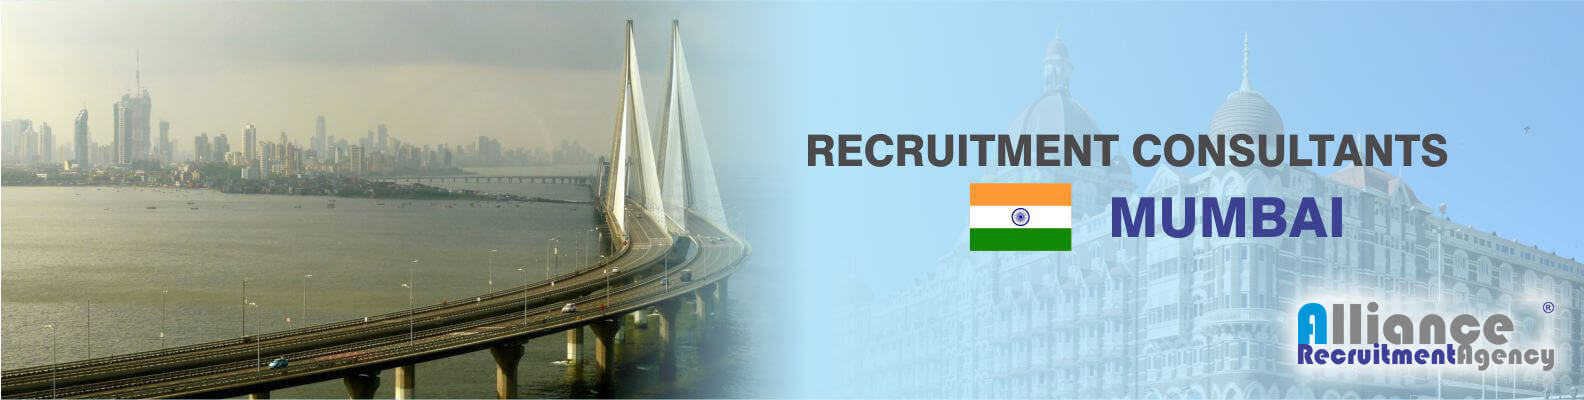 Recruitment Consultants Mumbai